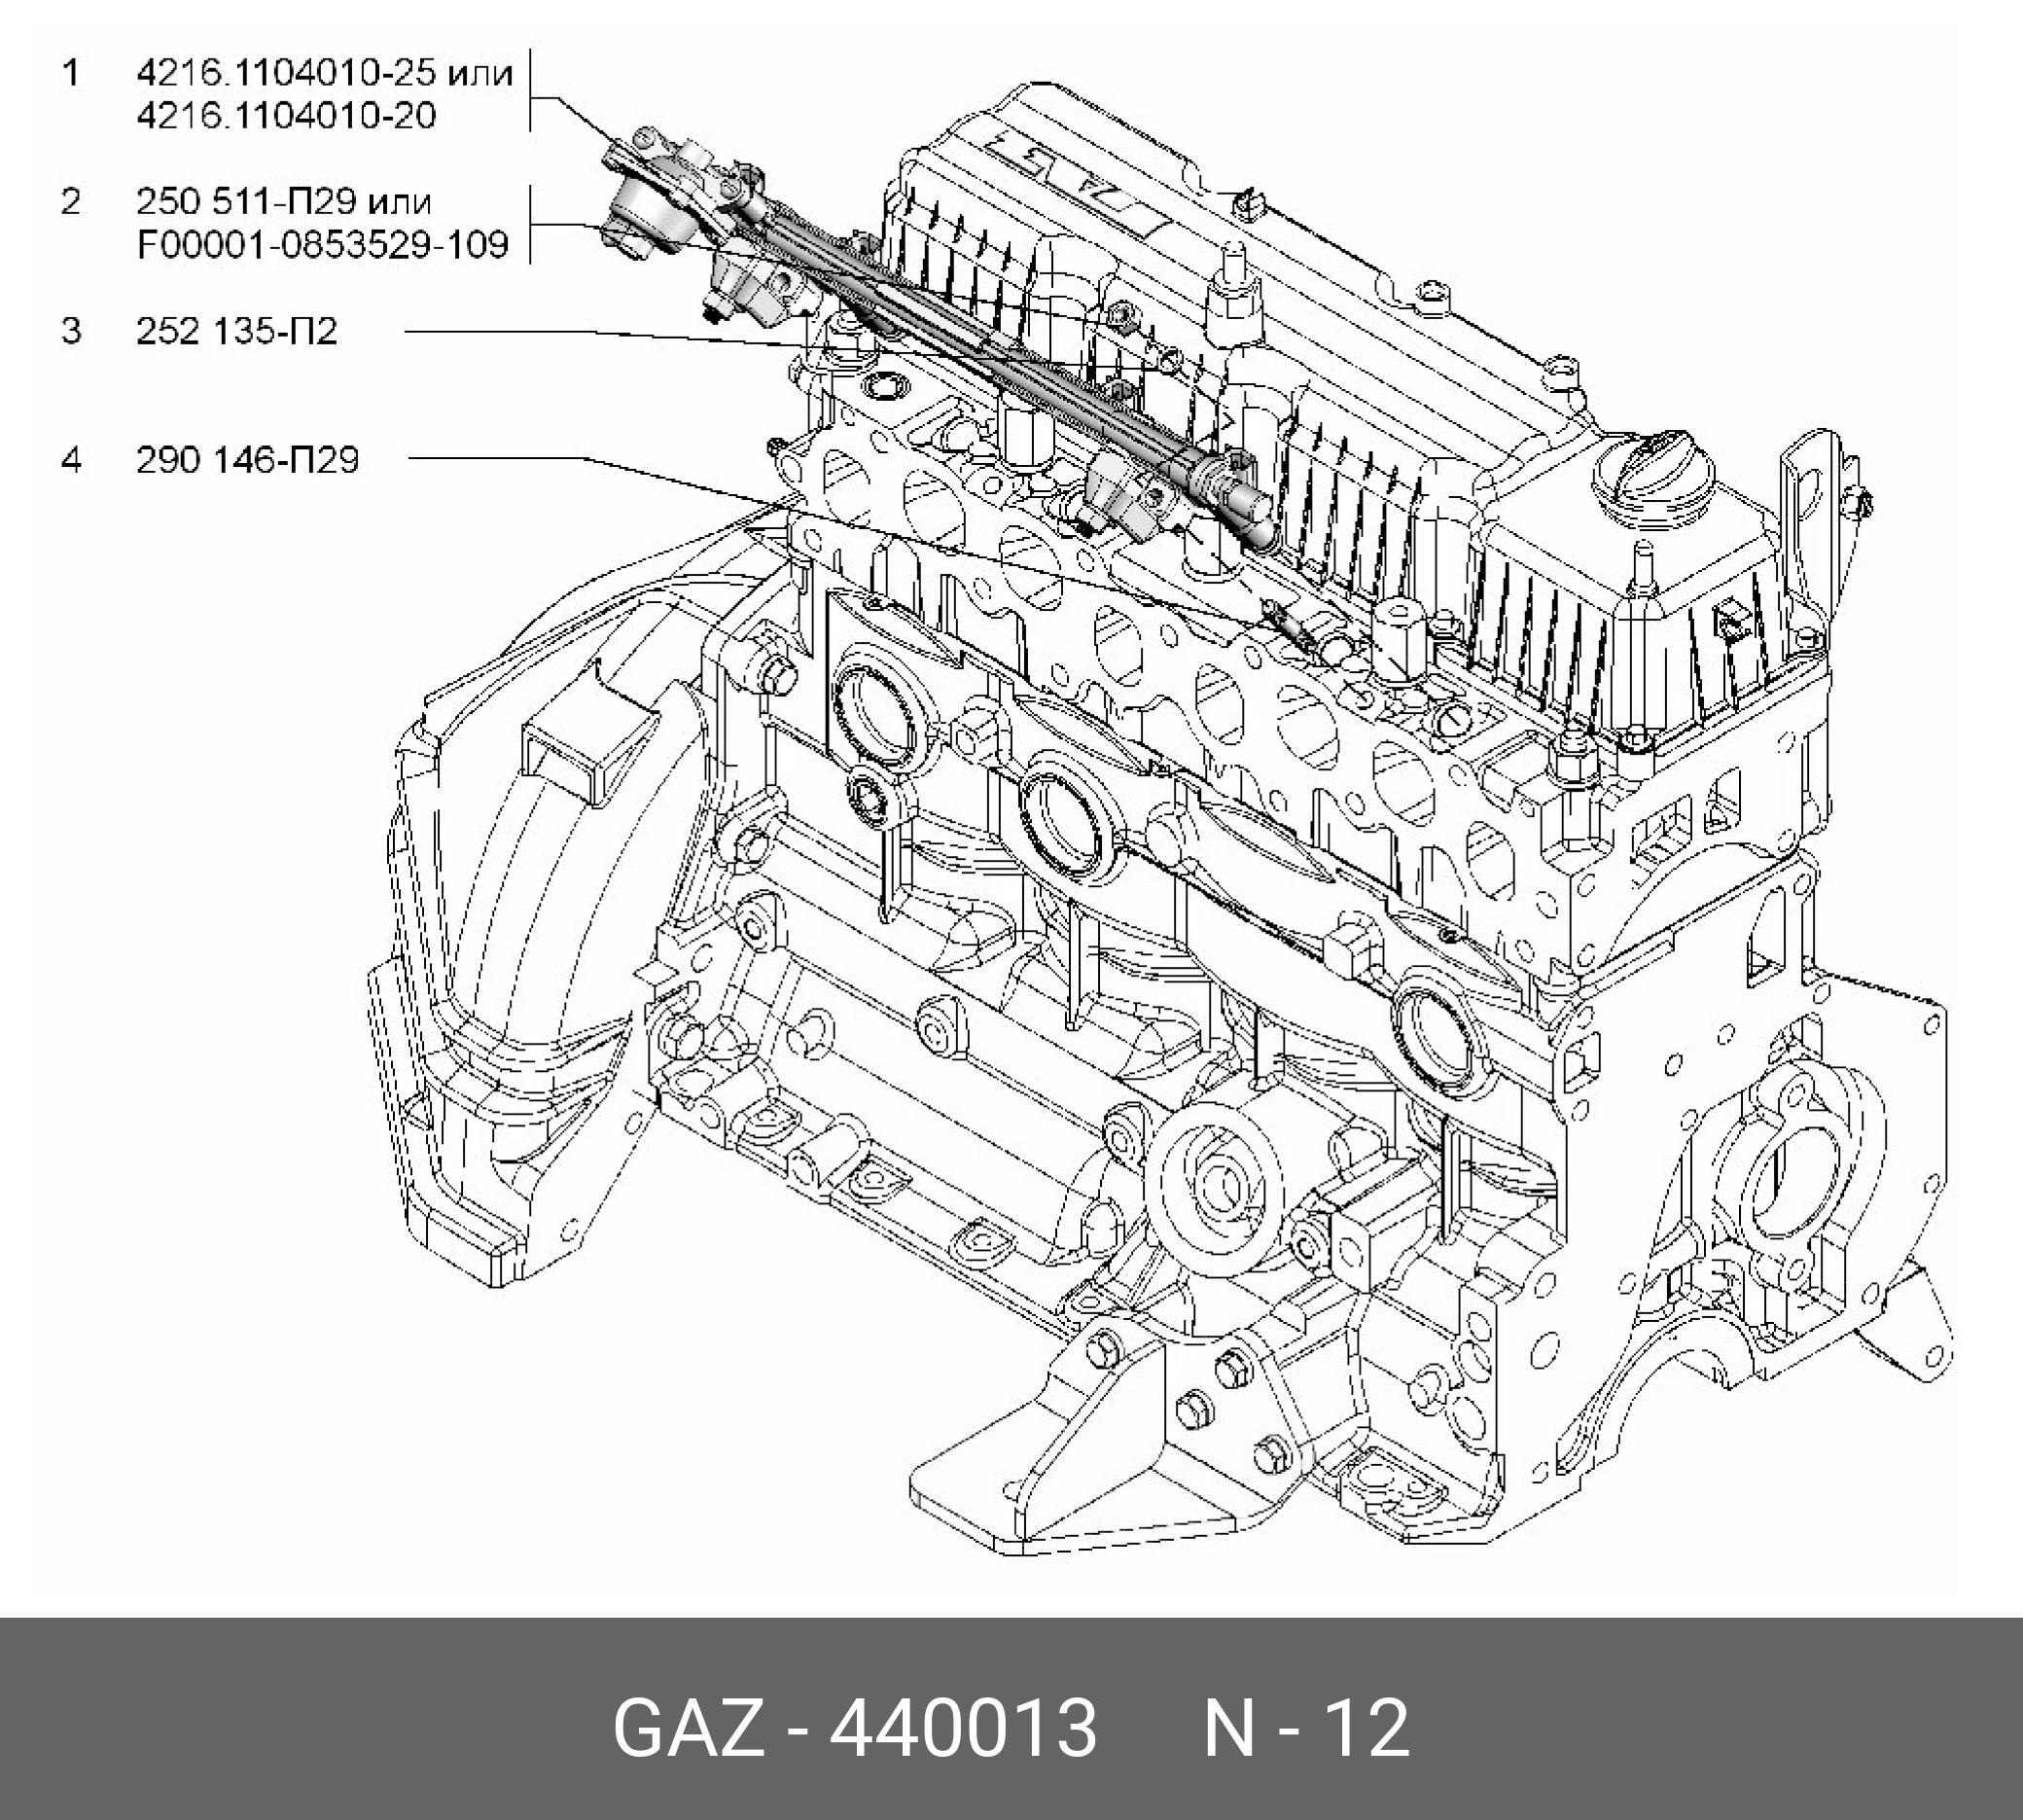 Амортизатор рампы топливной 3302 бизнес (оригинал) - GAZ 440 013